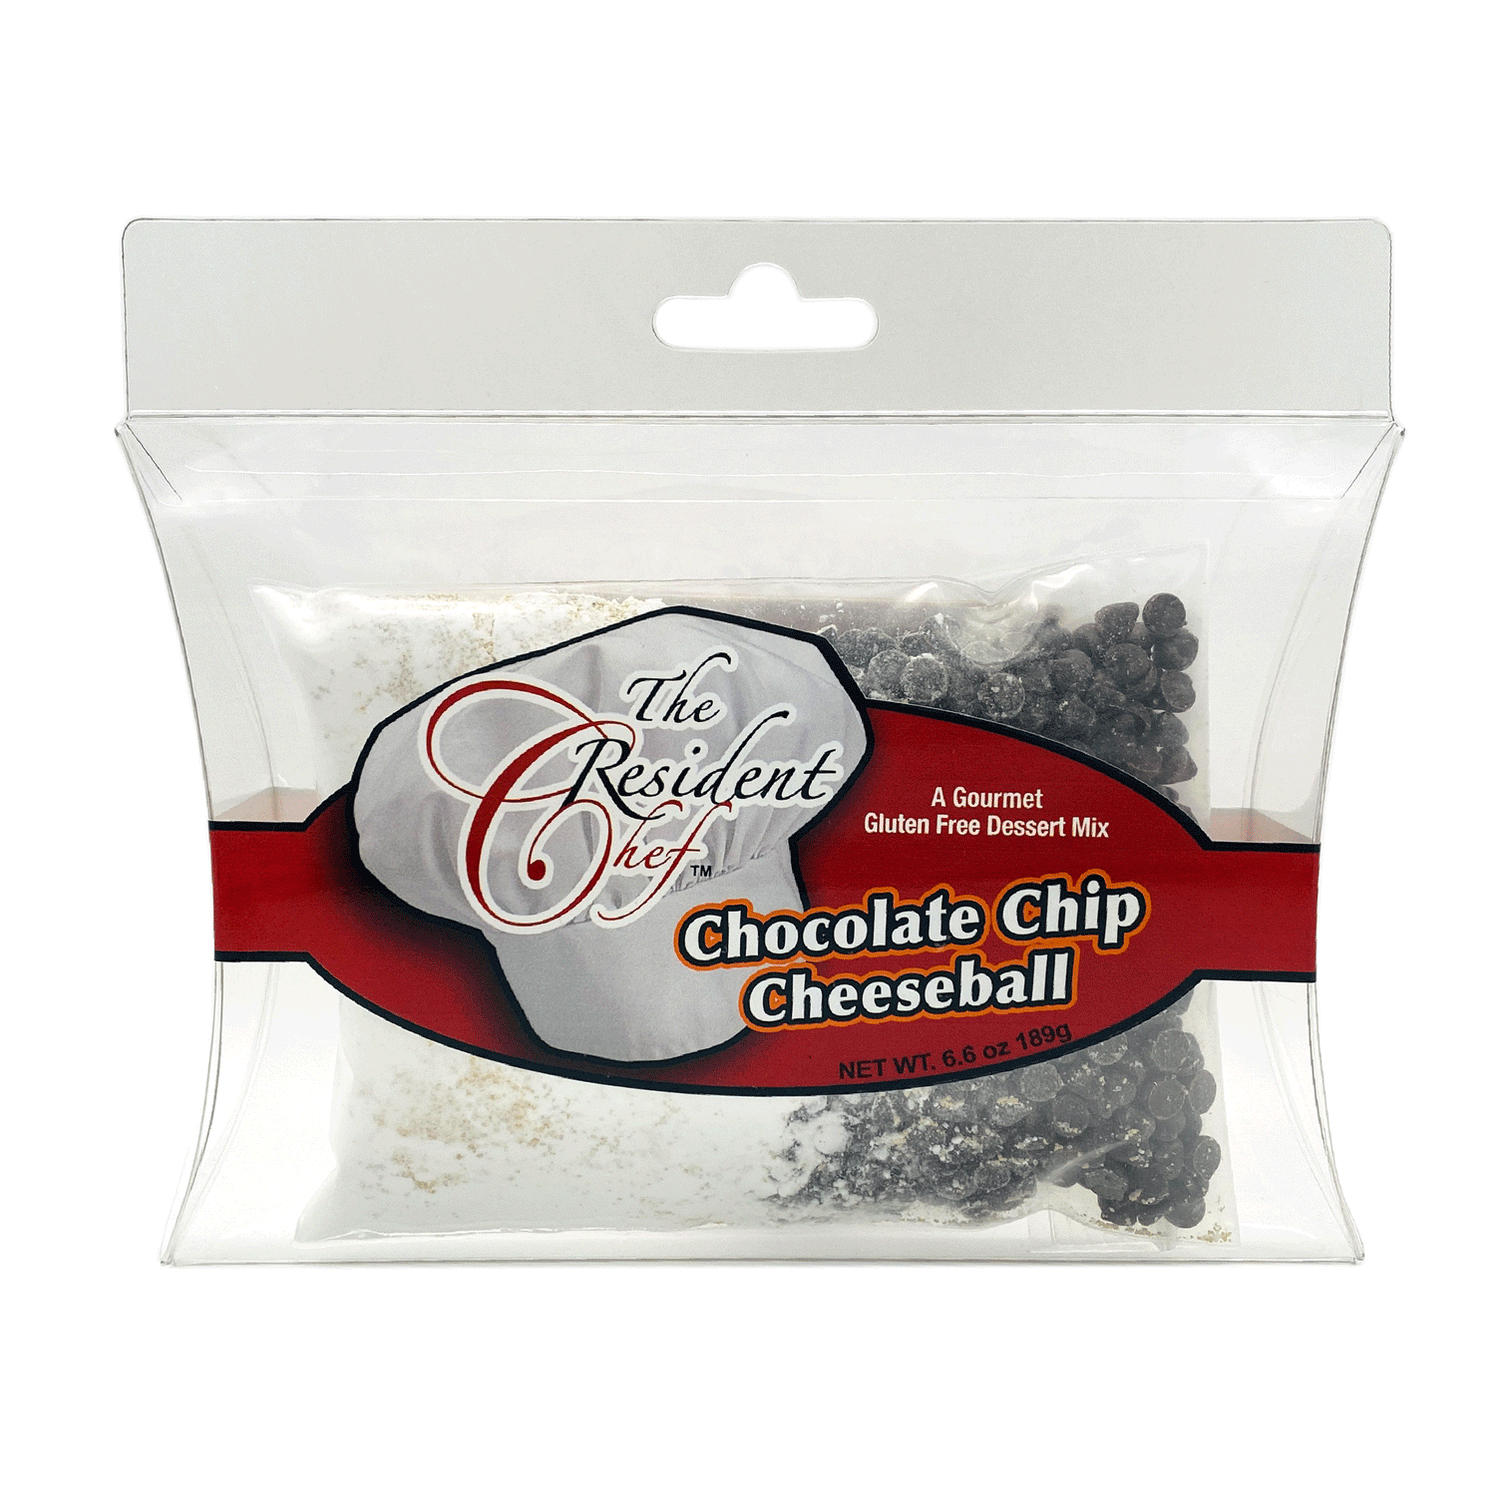 Chocolate Chip Cheeseball Mix